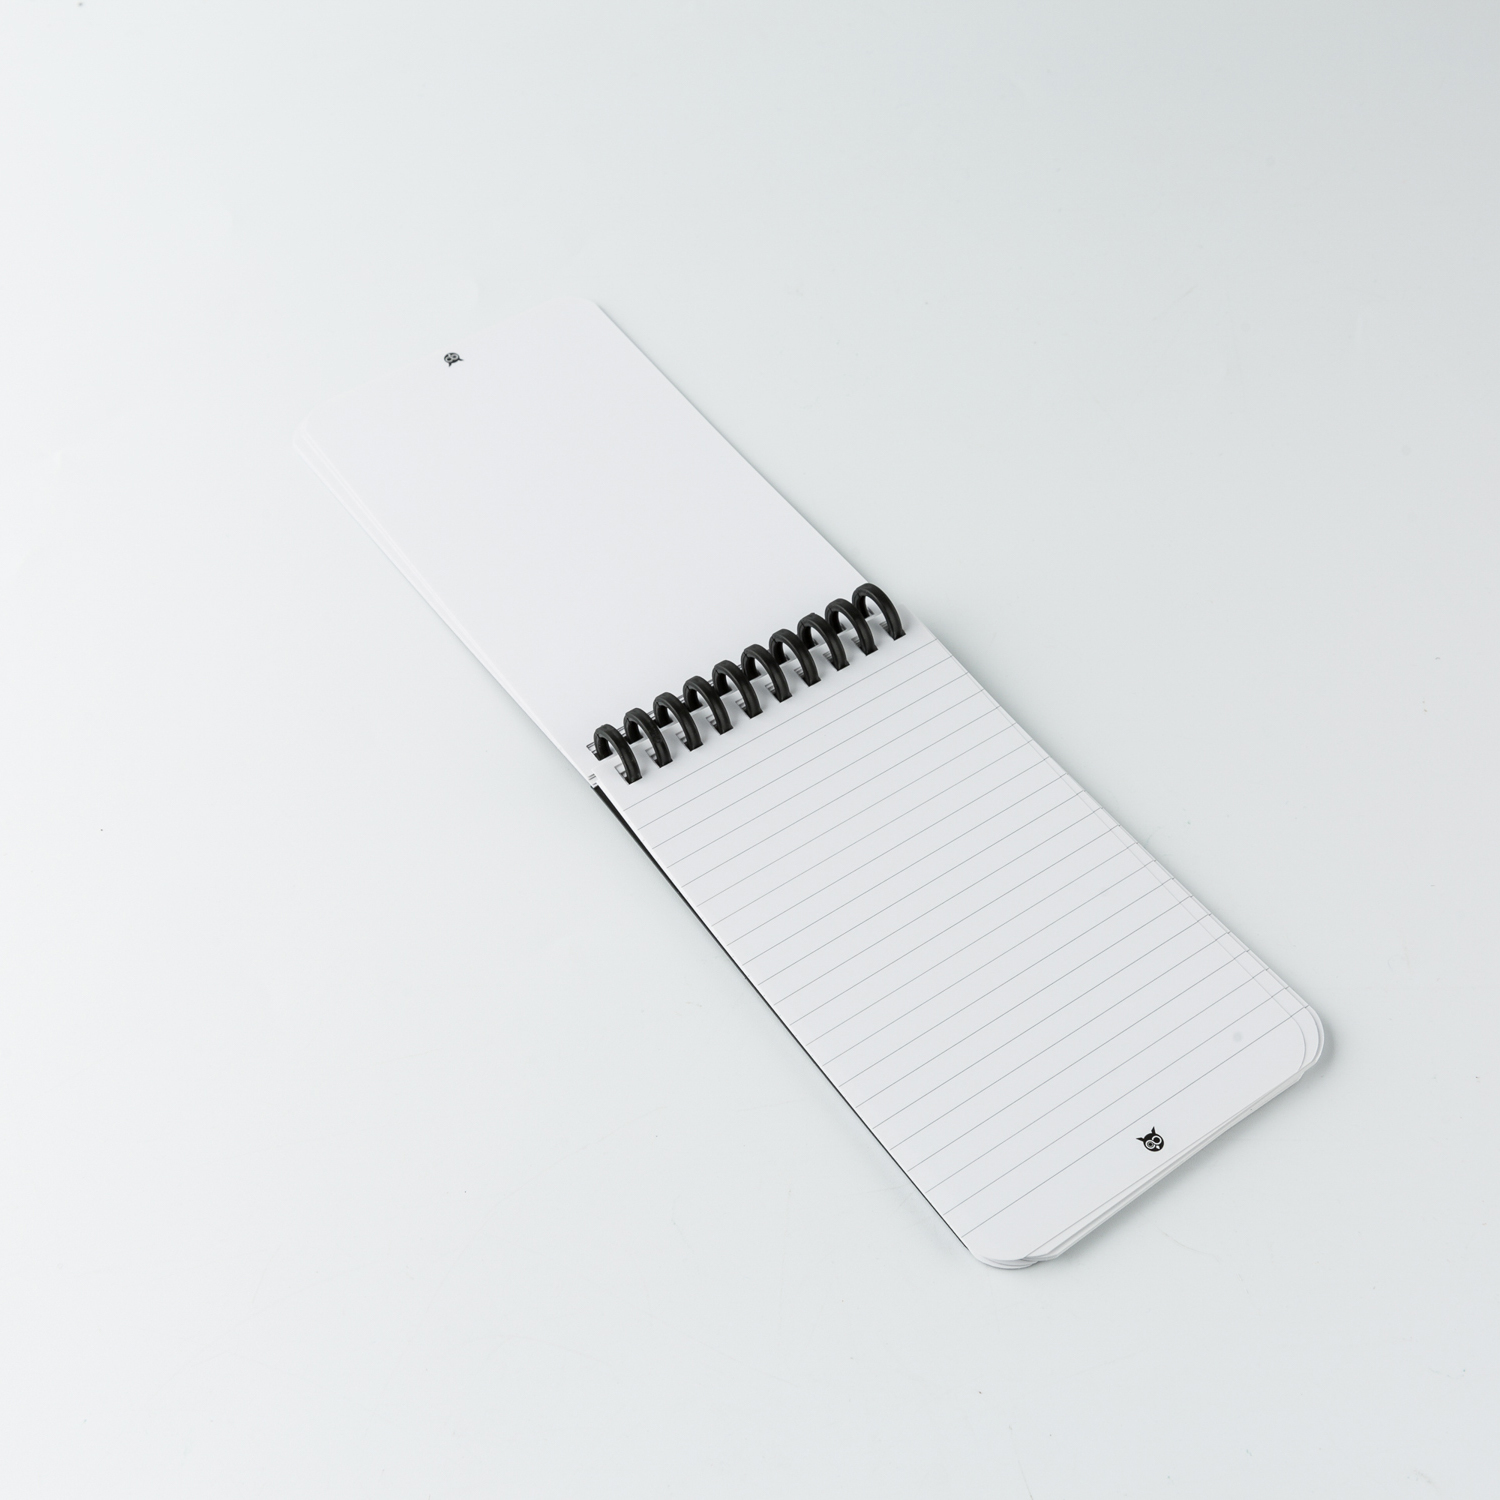 瑞士原产WHYNOTE可擦除可重复使用口袋笔记本矫正笔套装 黑色